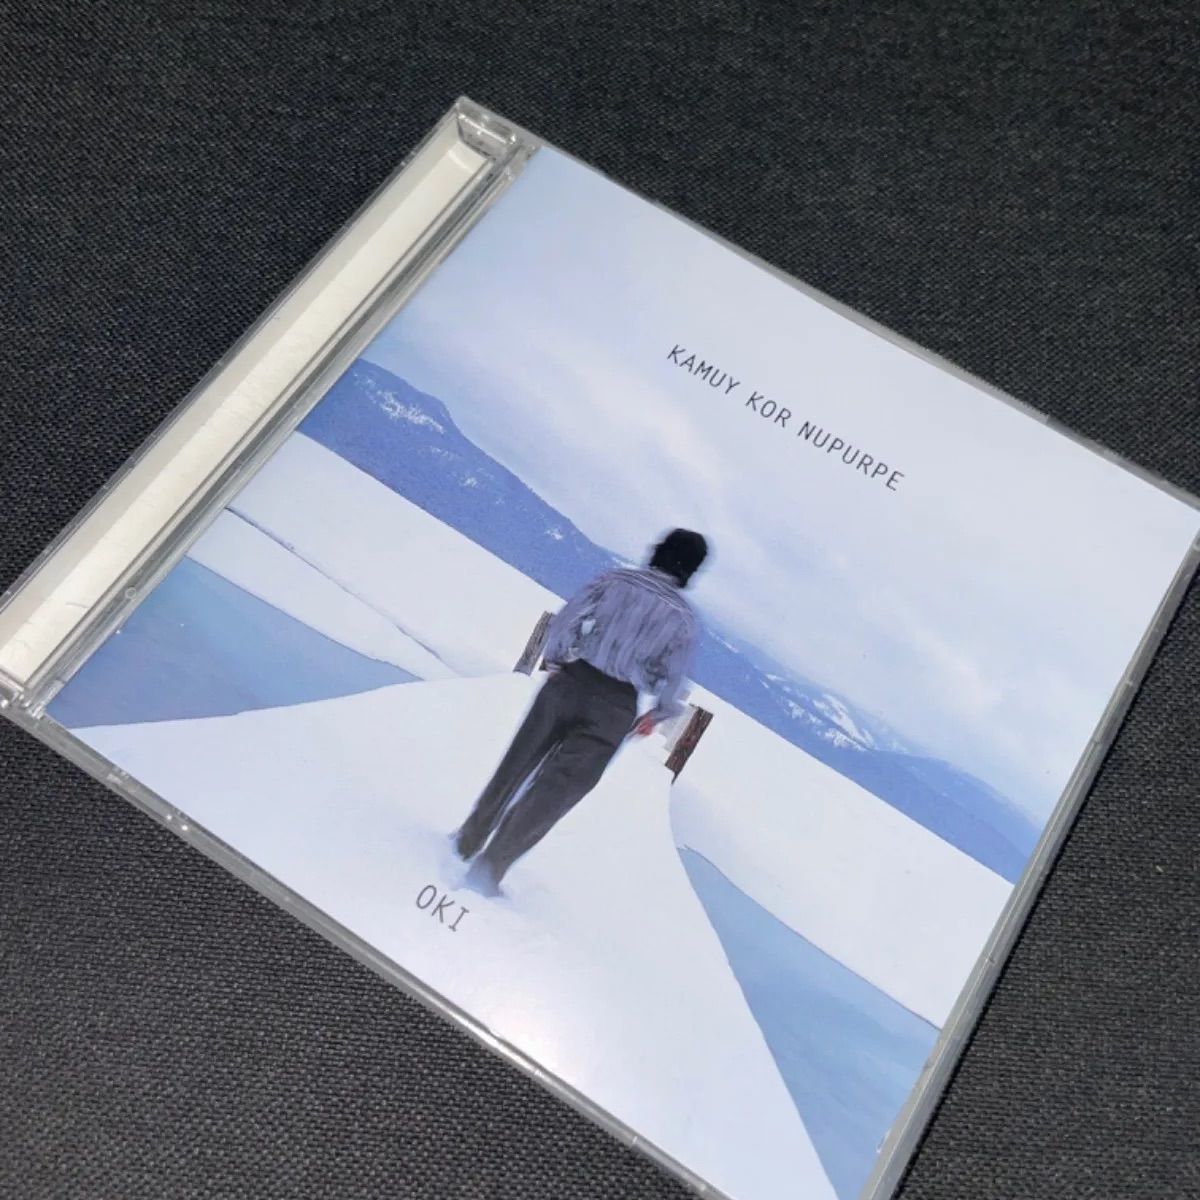 S1232)廃盤CD OKI kamuy kor nupurpe CD アイヌ オキ カムイコルヌプル